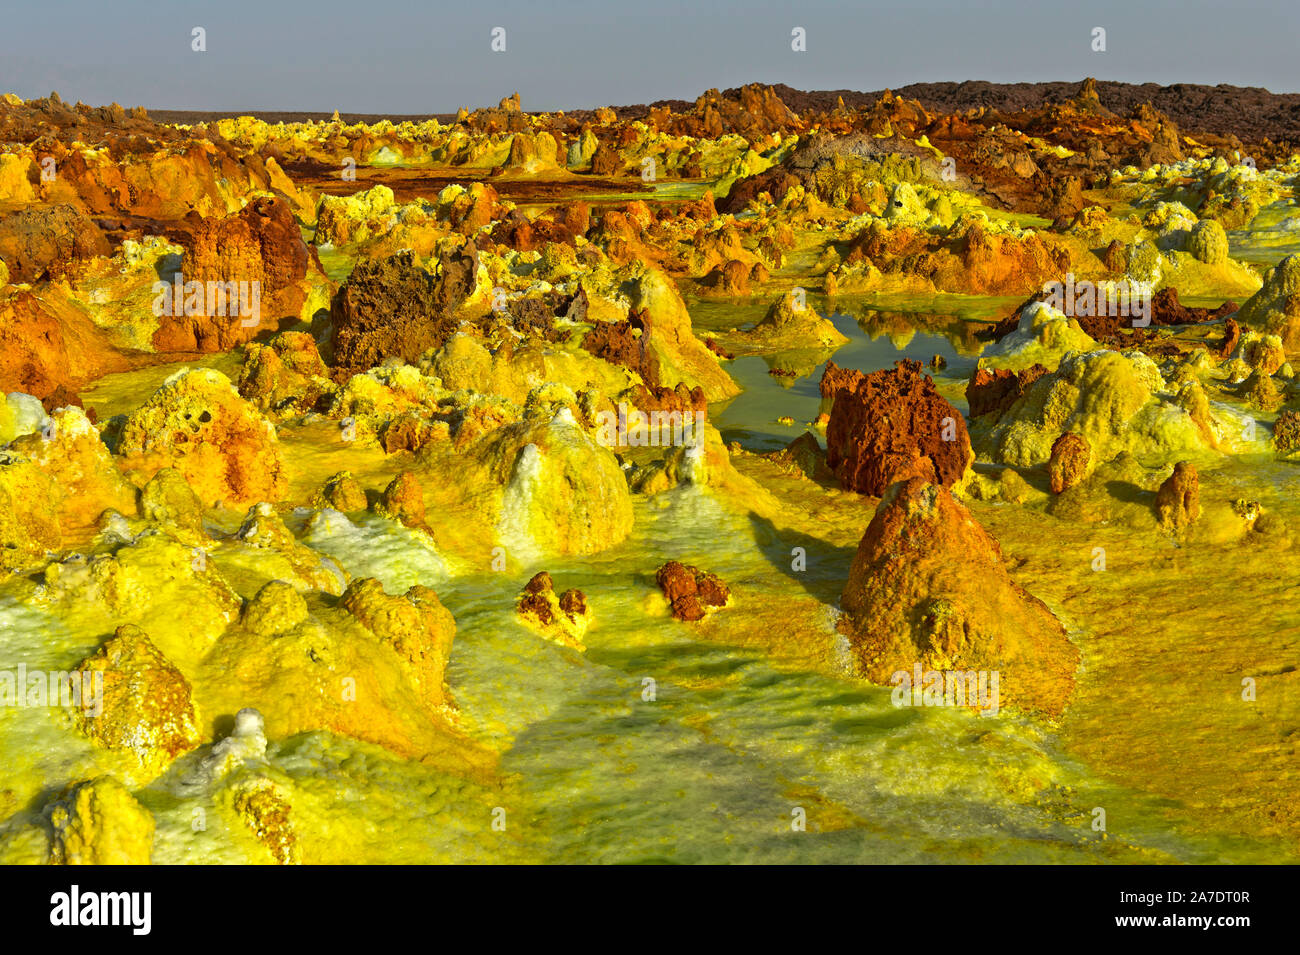 Dans les fumerolles sulfureuses de forme pyramidale, les sédiments de champ géothermique dépression Danakil, Dallol, Triangle Afar, Ethiopie Banque D'Images